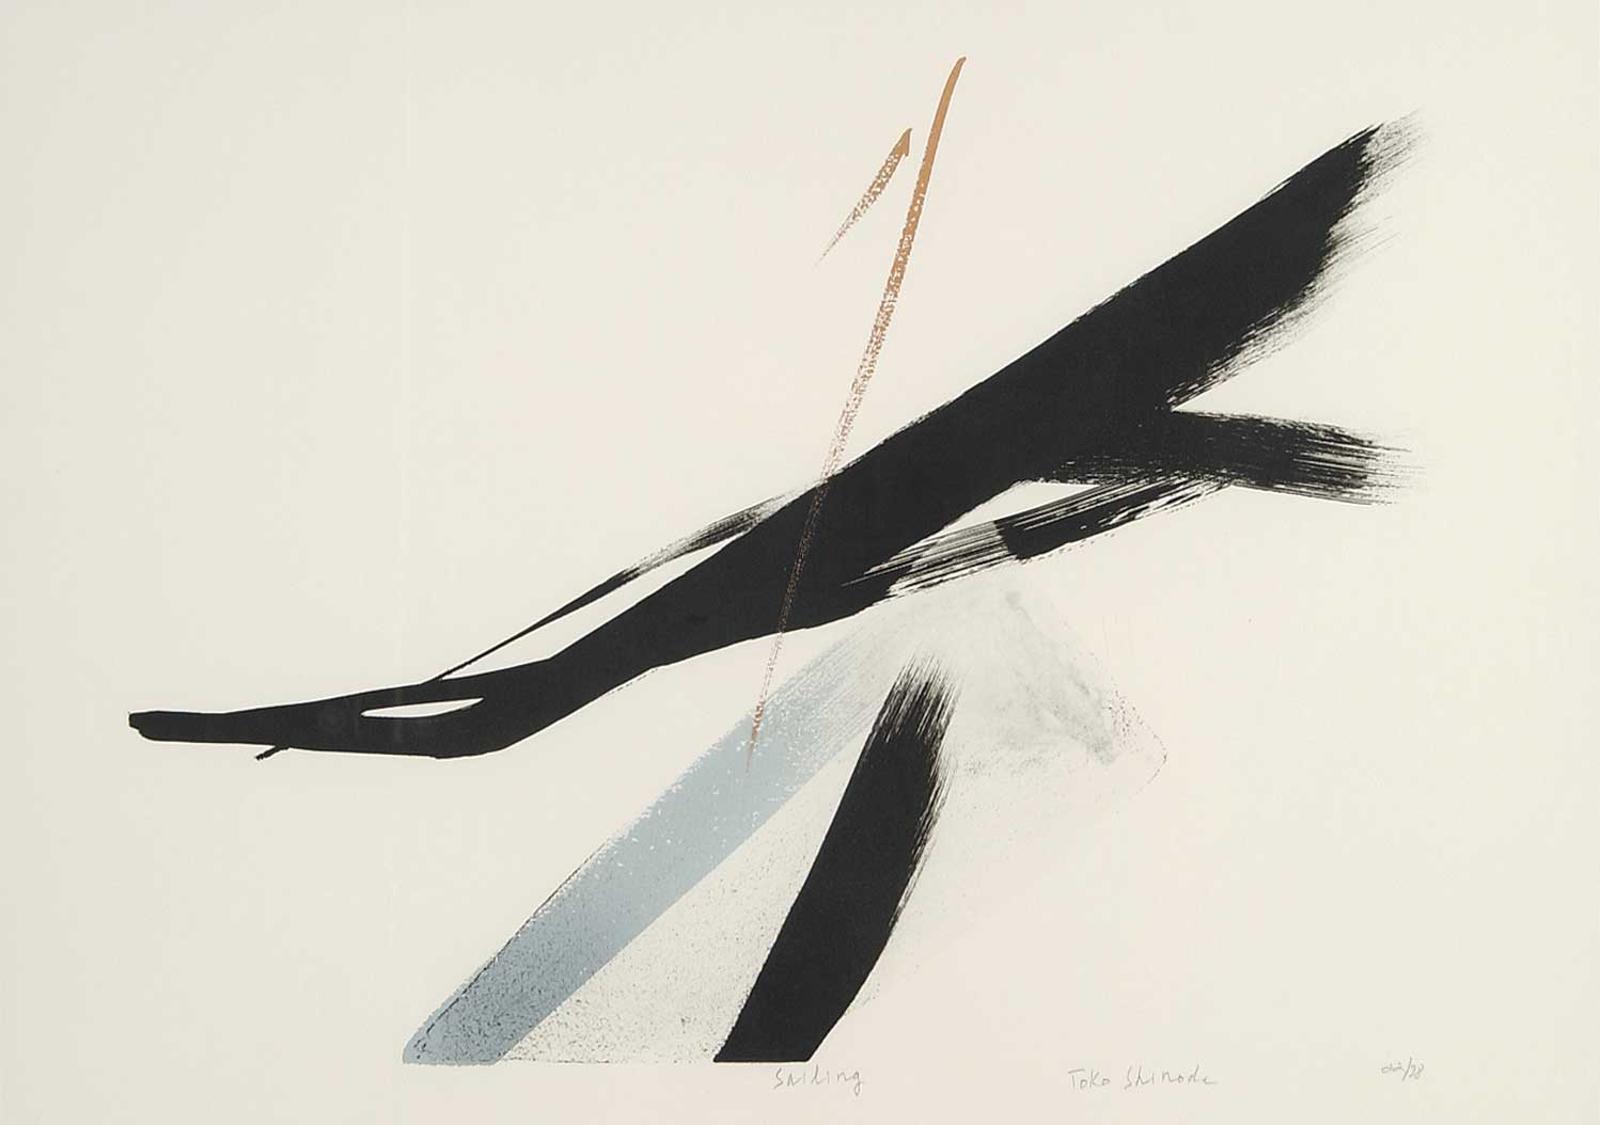 Toko Shinoda (1913) - Sailing  #22/38